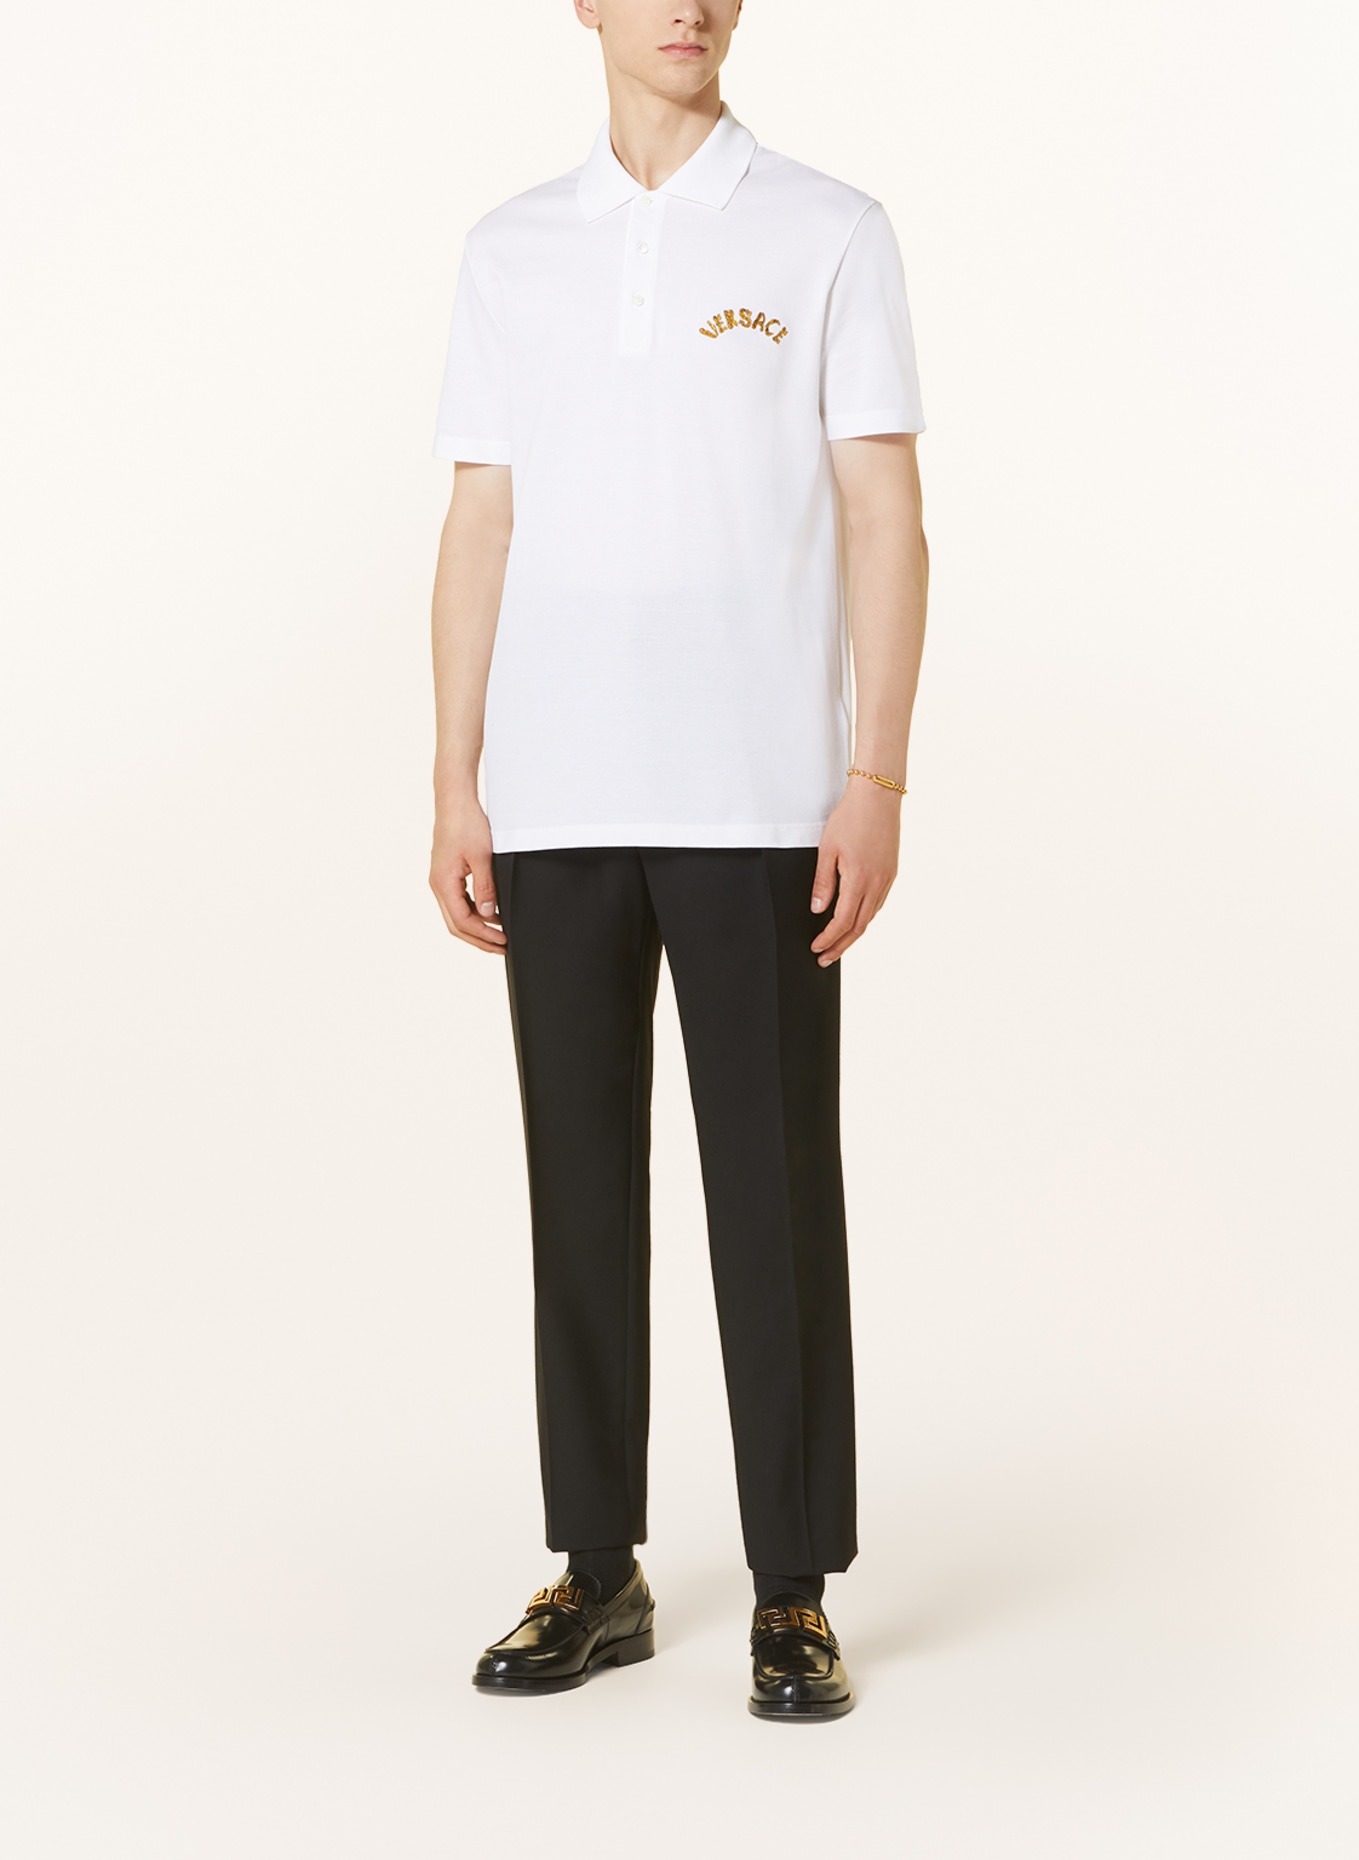 VERSACE Piqué polo shirt tailor fit, Color: WHITE (Image 2)